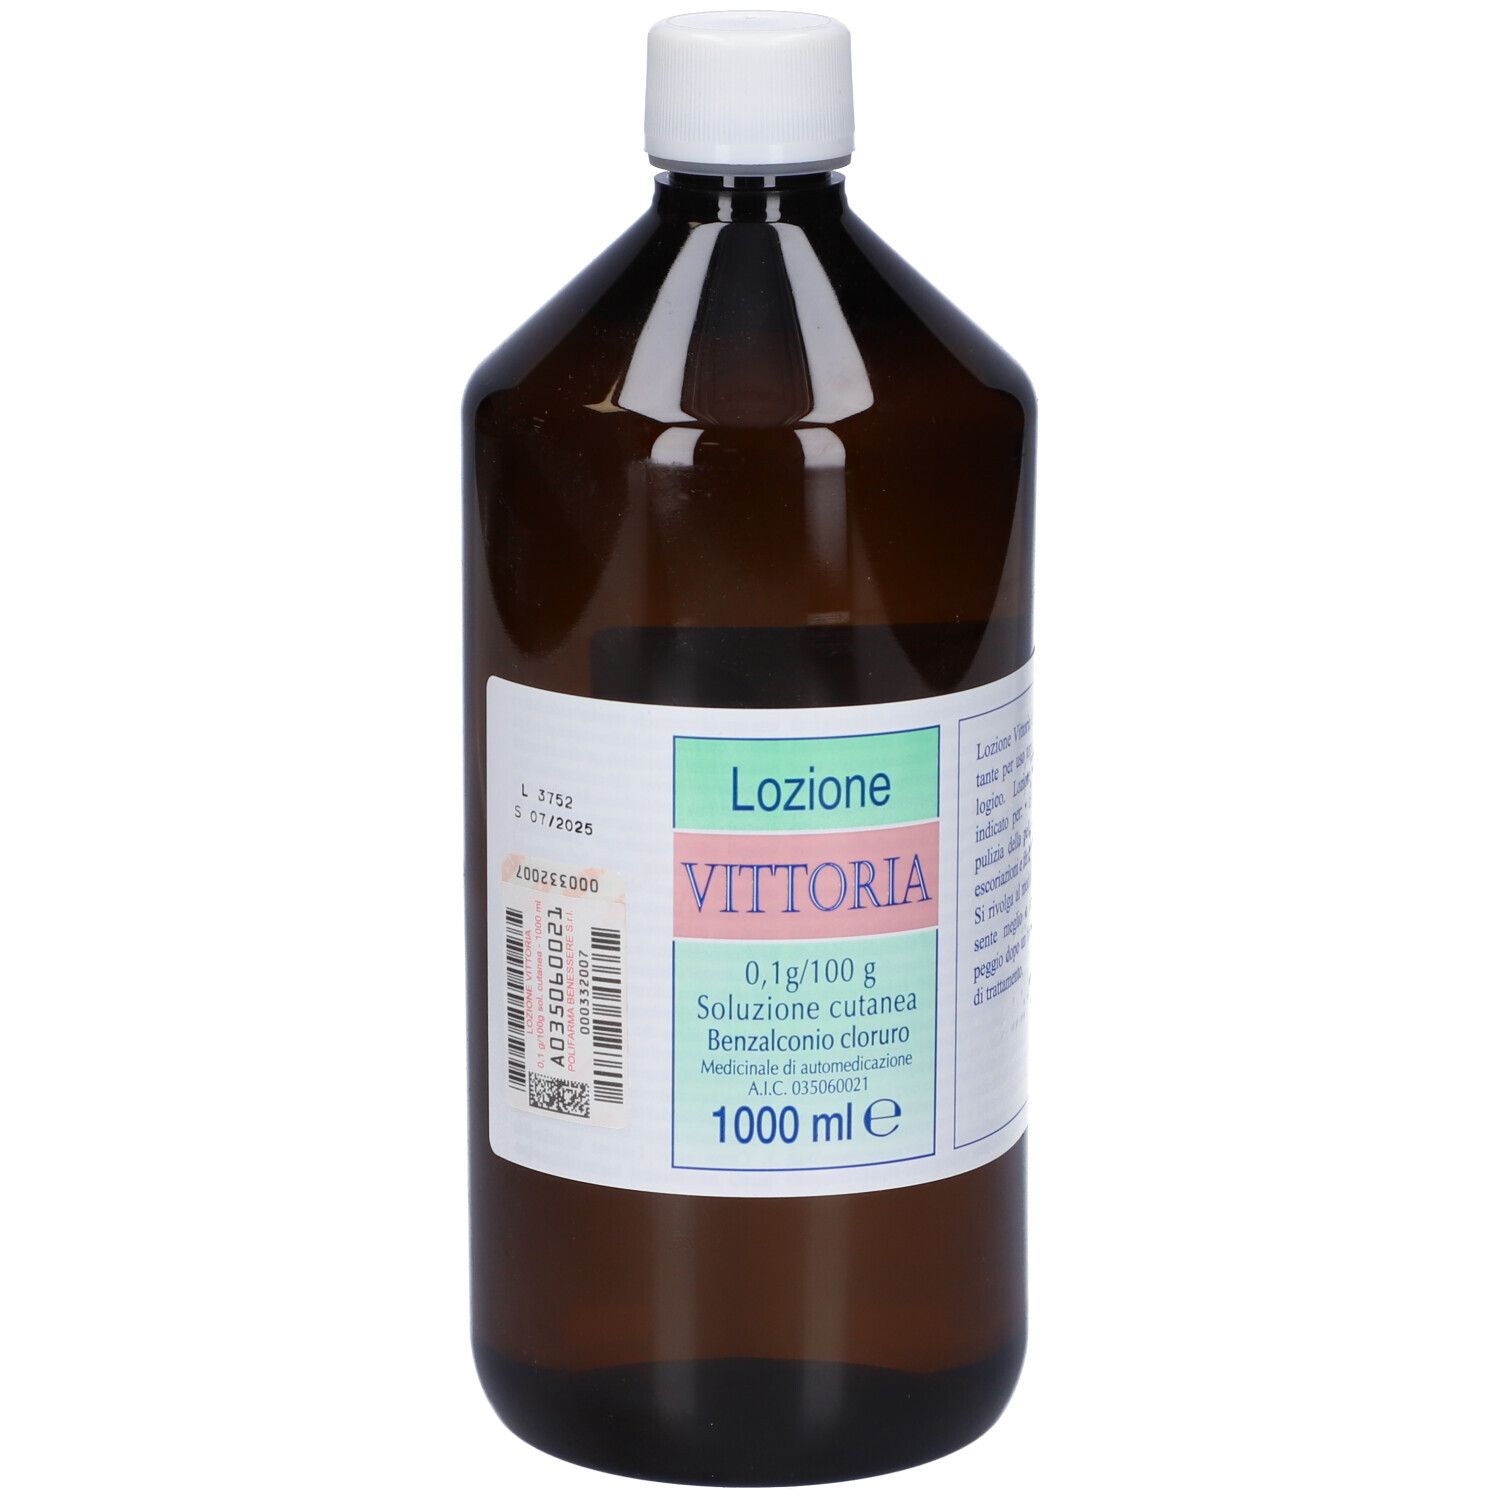 Lozione VITTORIA 1000 ml